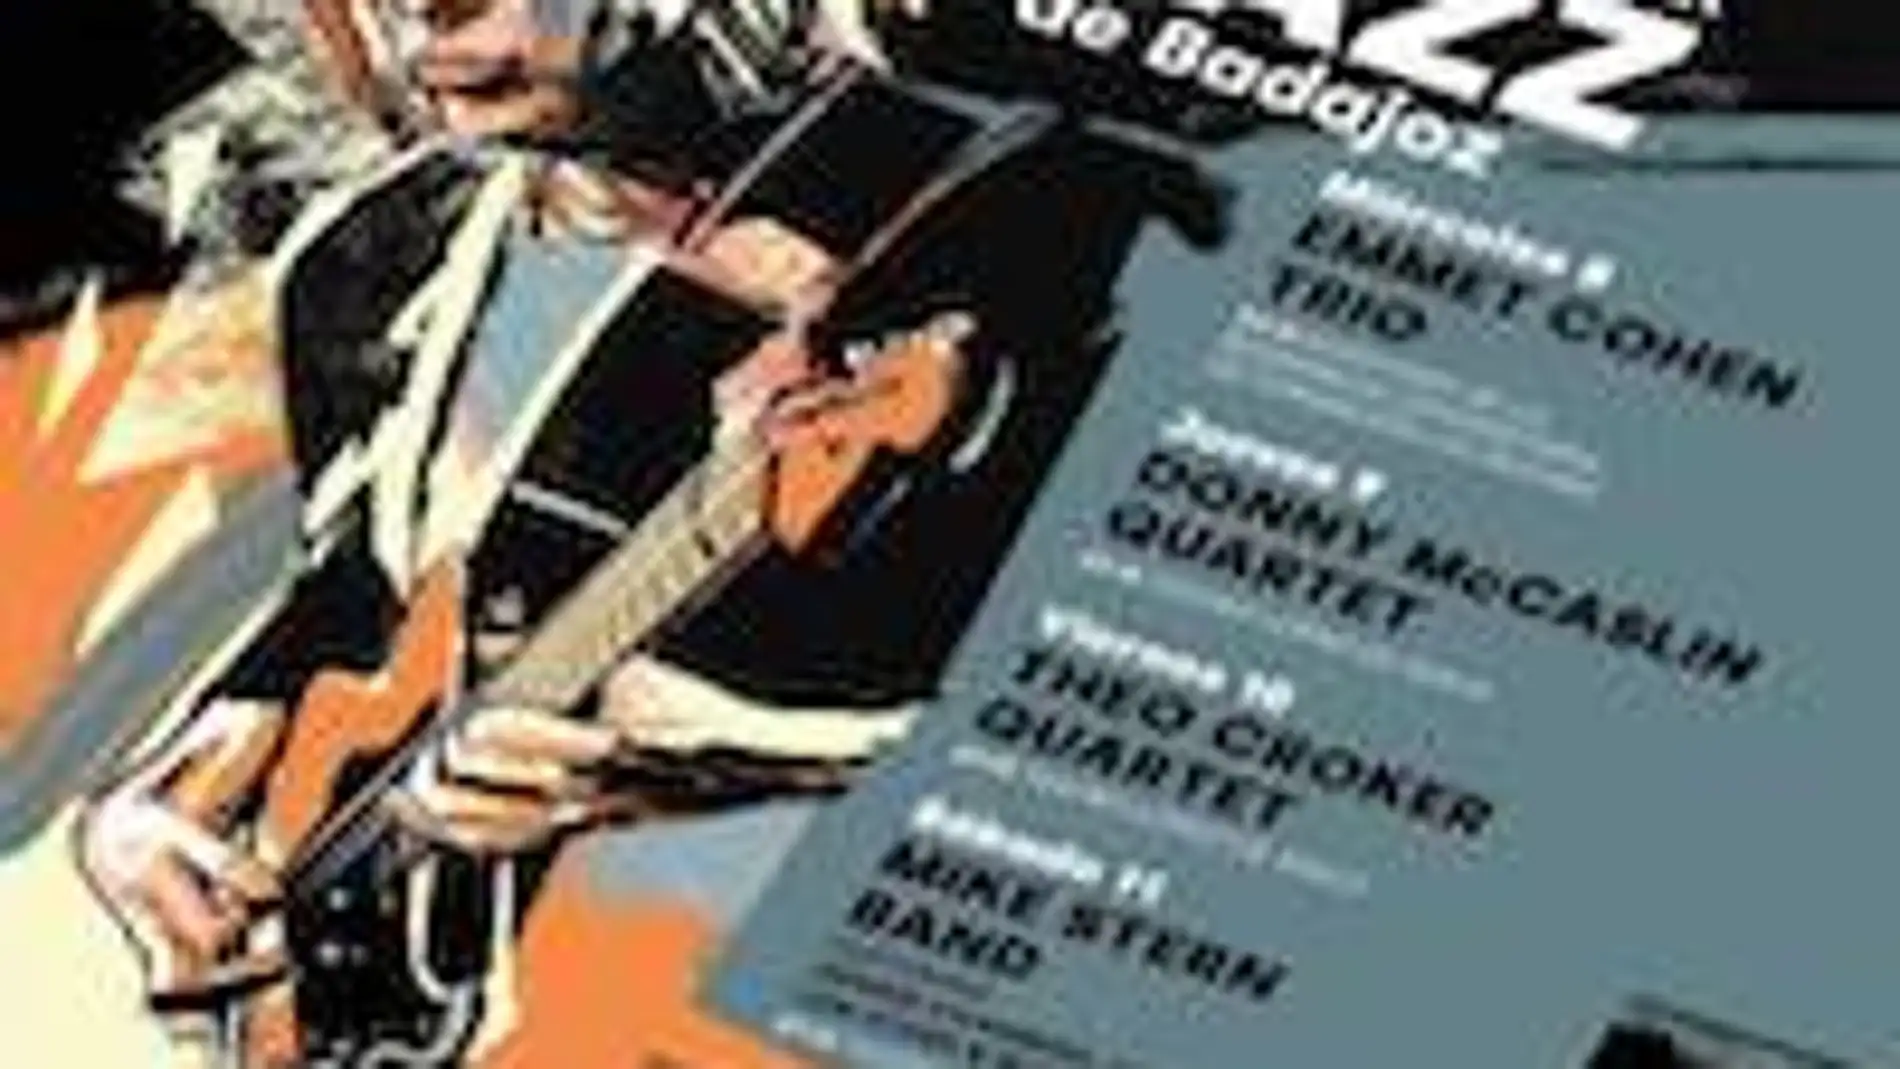 El XXXVI Festival de Jazz de Badajoz contará con nombres como Mike Stern, Theo Croker, Donny McCaslin y Emmet Cohen